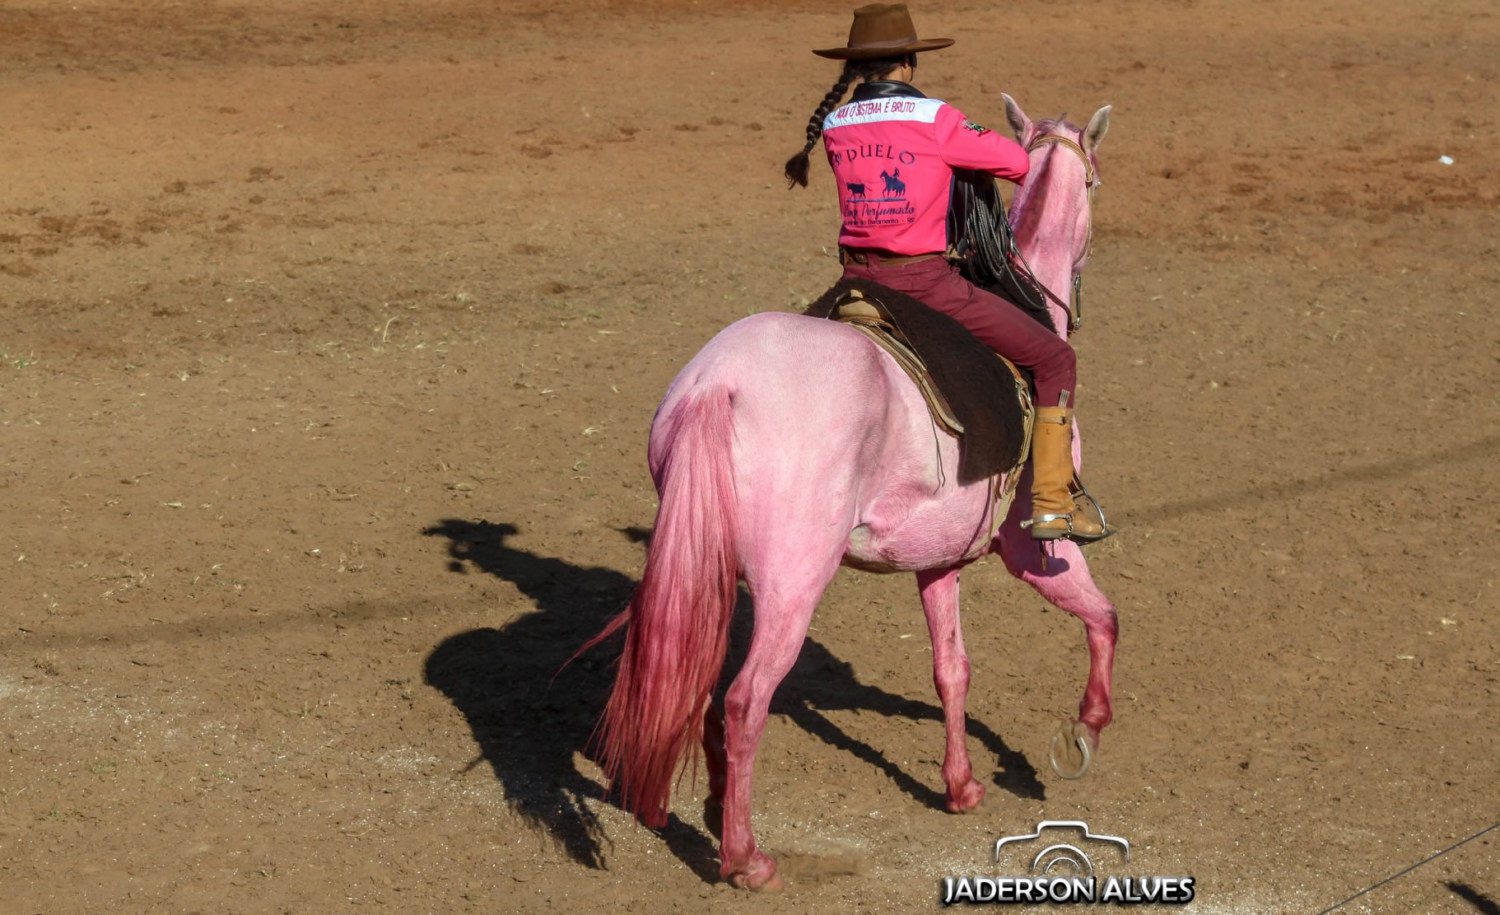 cavalo e bezerro pintados de rosa no rio grande do sul